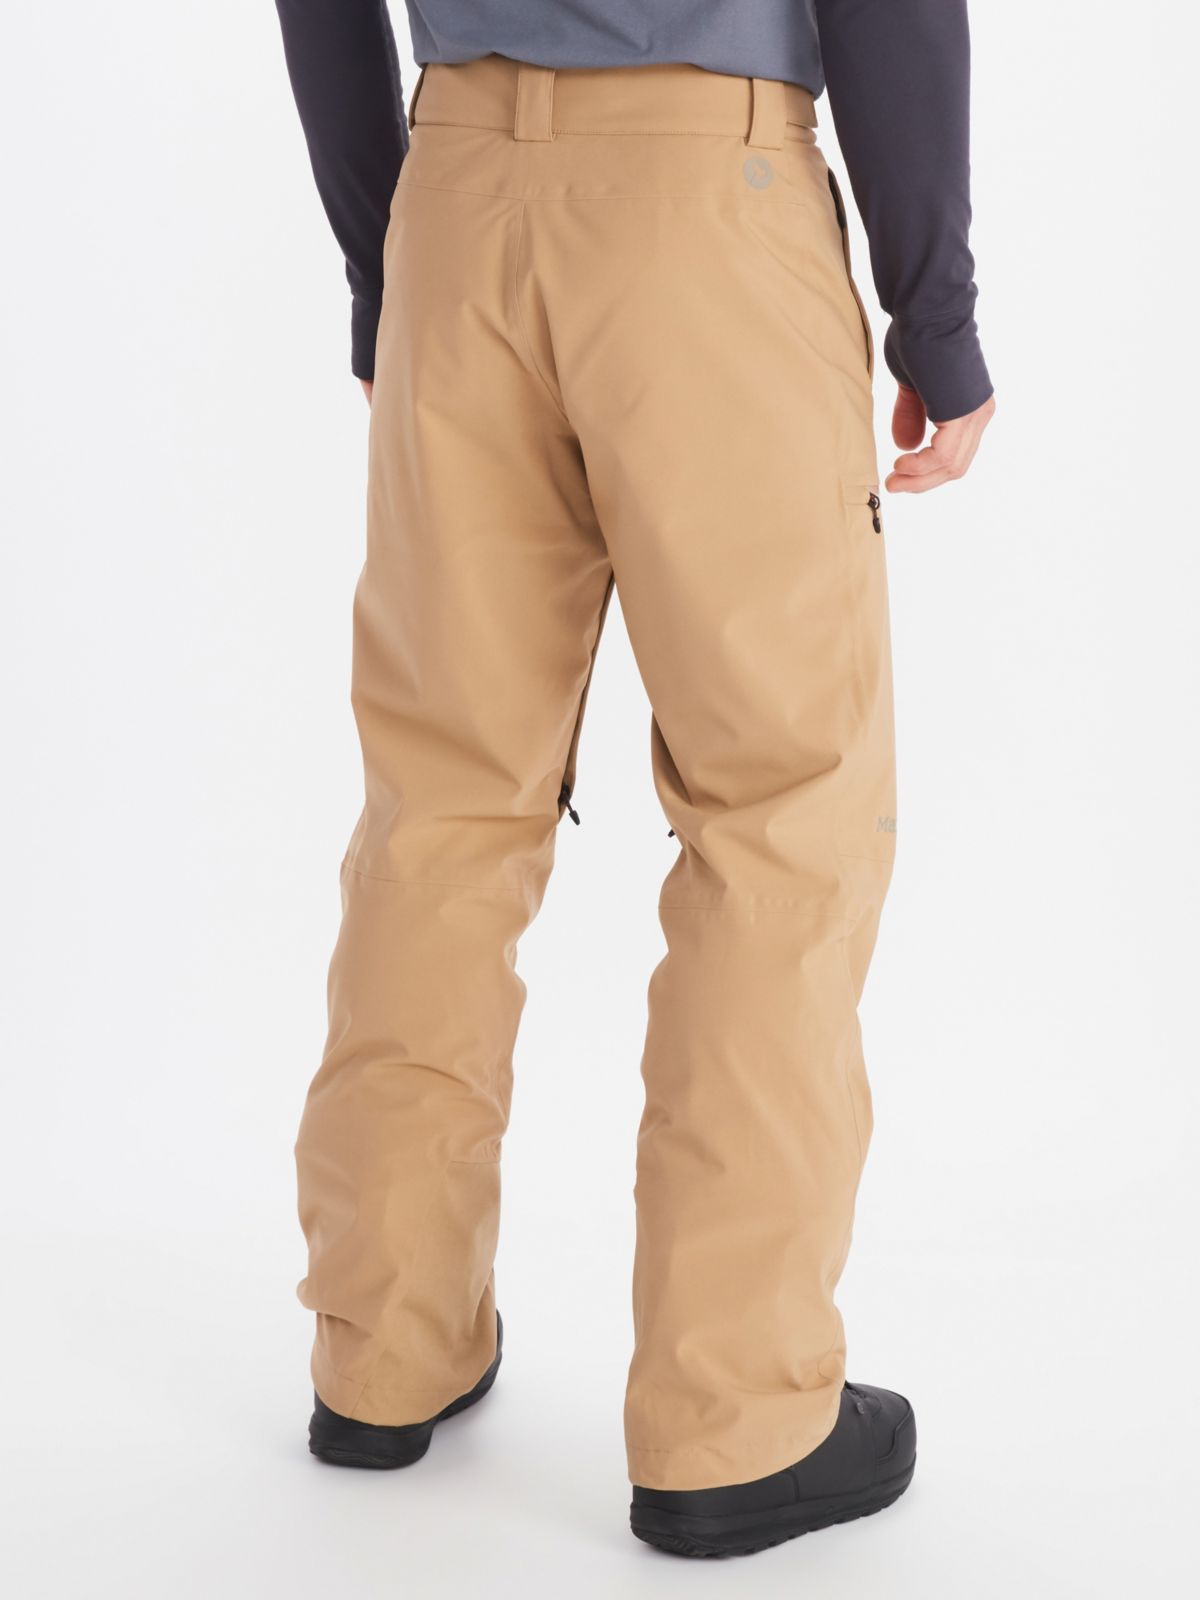 bib pants worn by male model